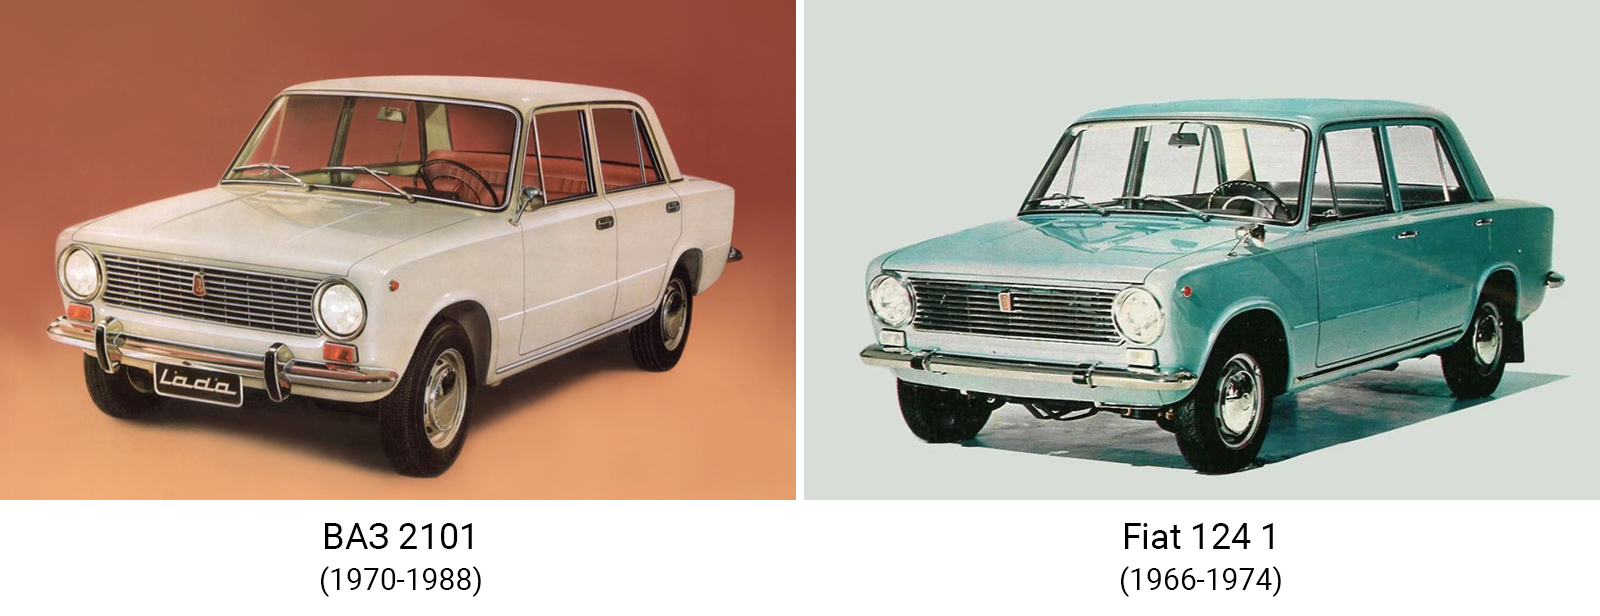 ВАЗ 2101 и Fiat 124 1